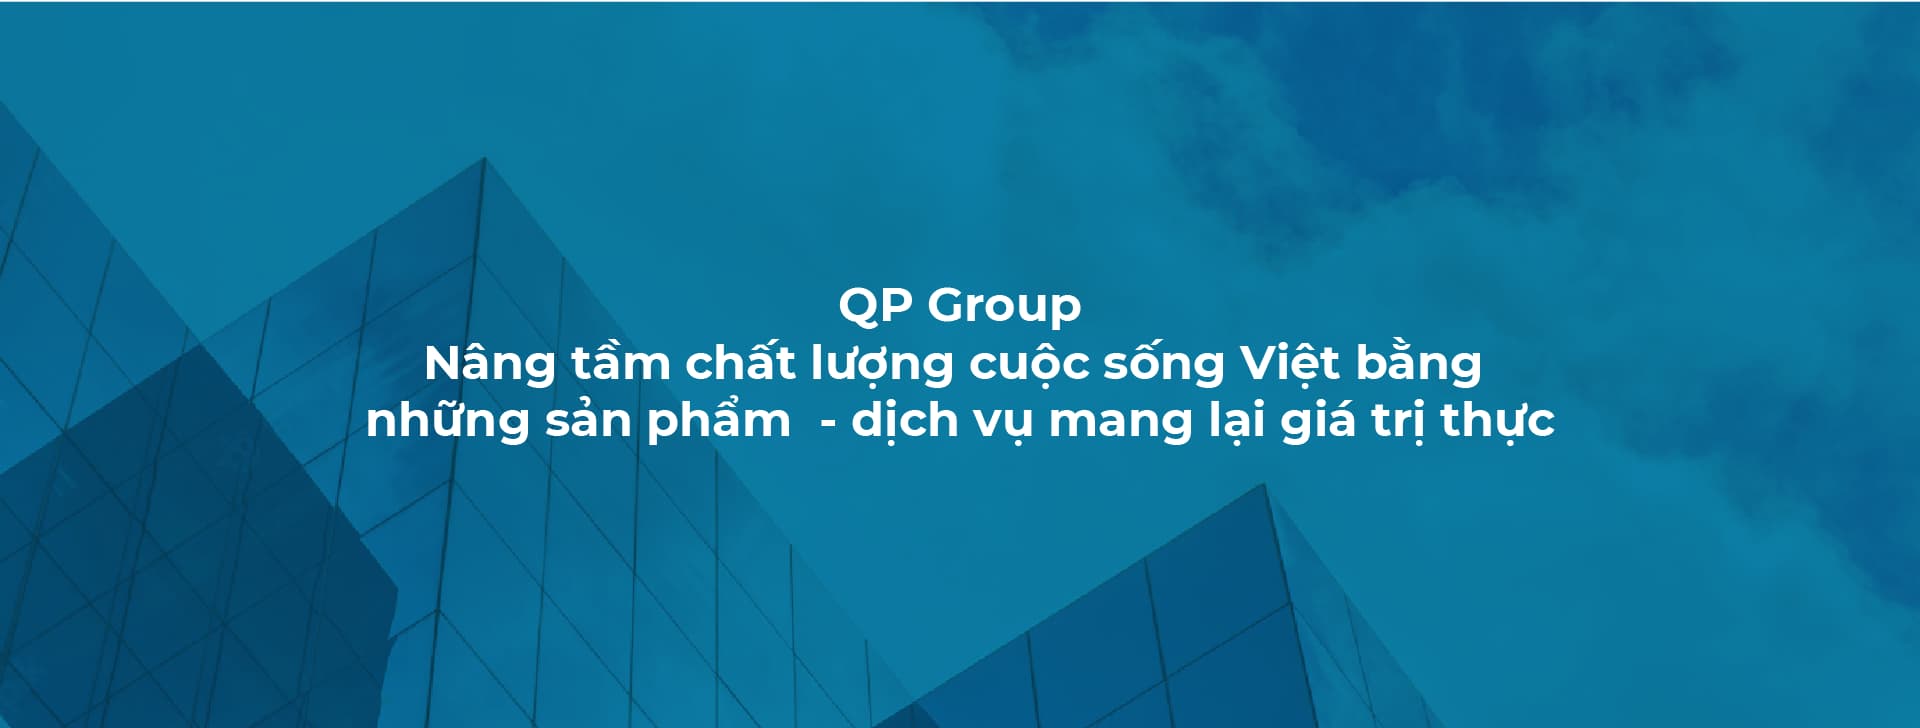 Dự án thiết kế thương hiệu Quang Phúc Group - 5